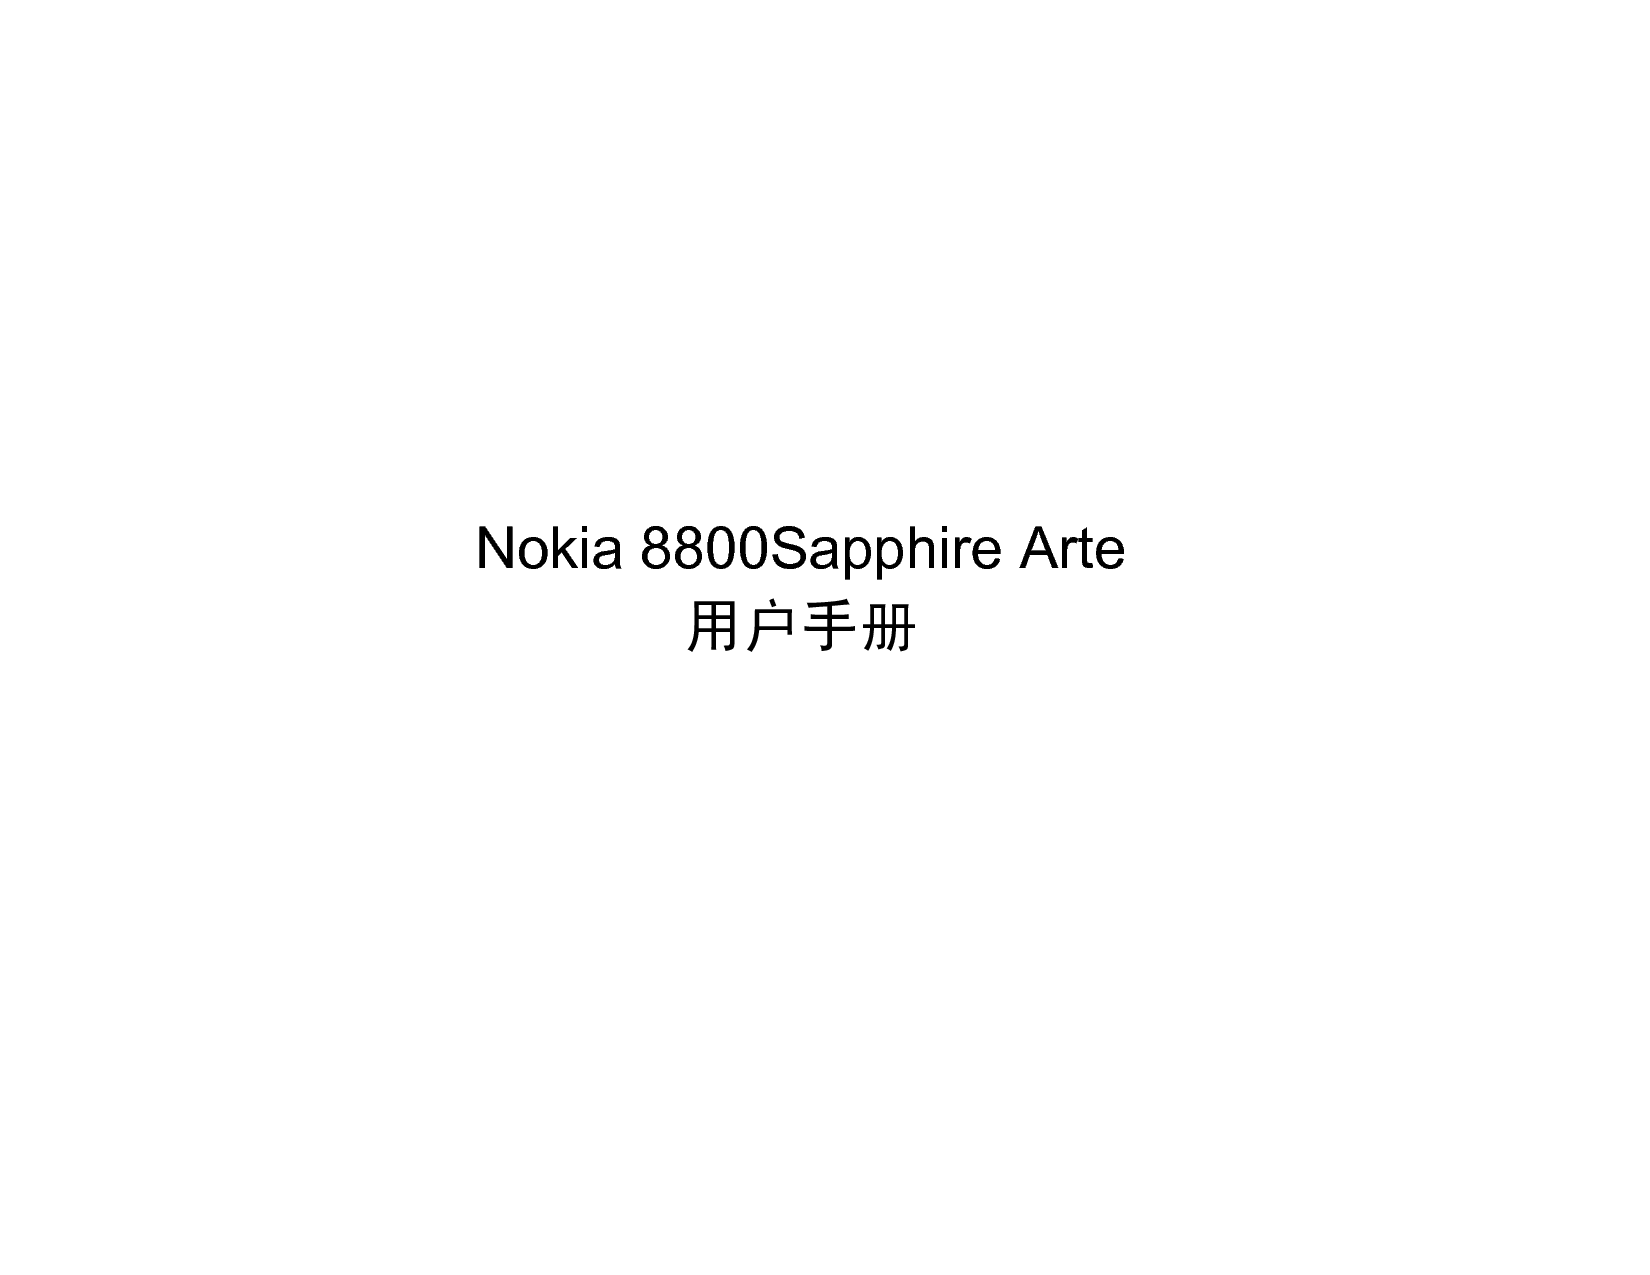 诺基亚 Nokia 8800 SAPPHIRE ARTE 用户手册 封面